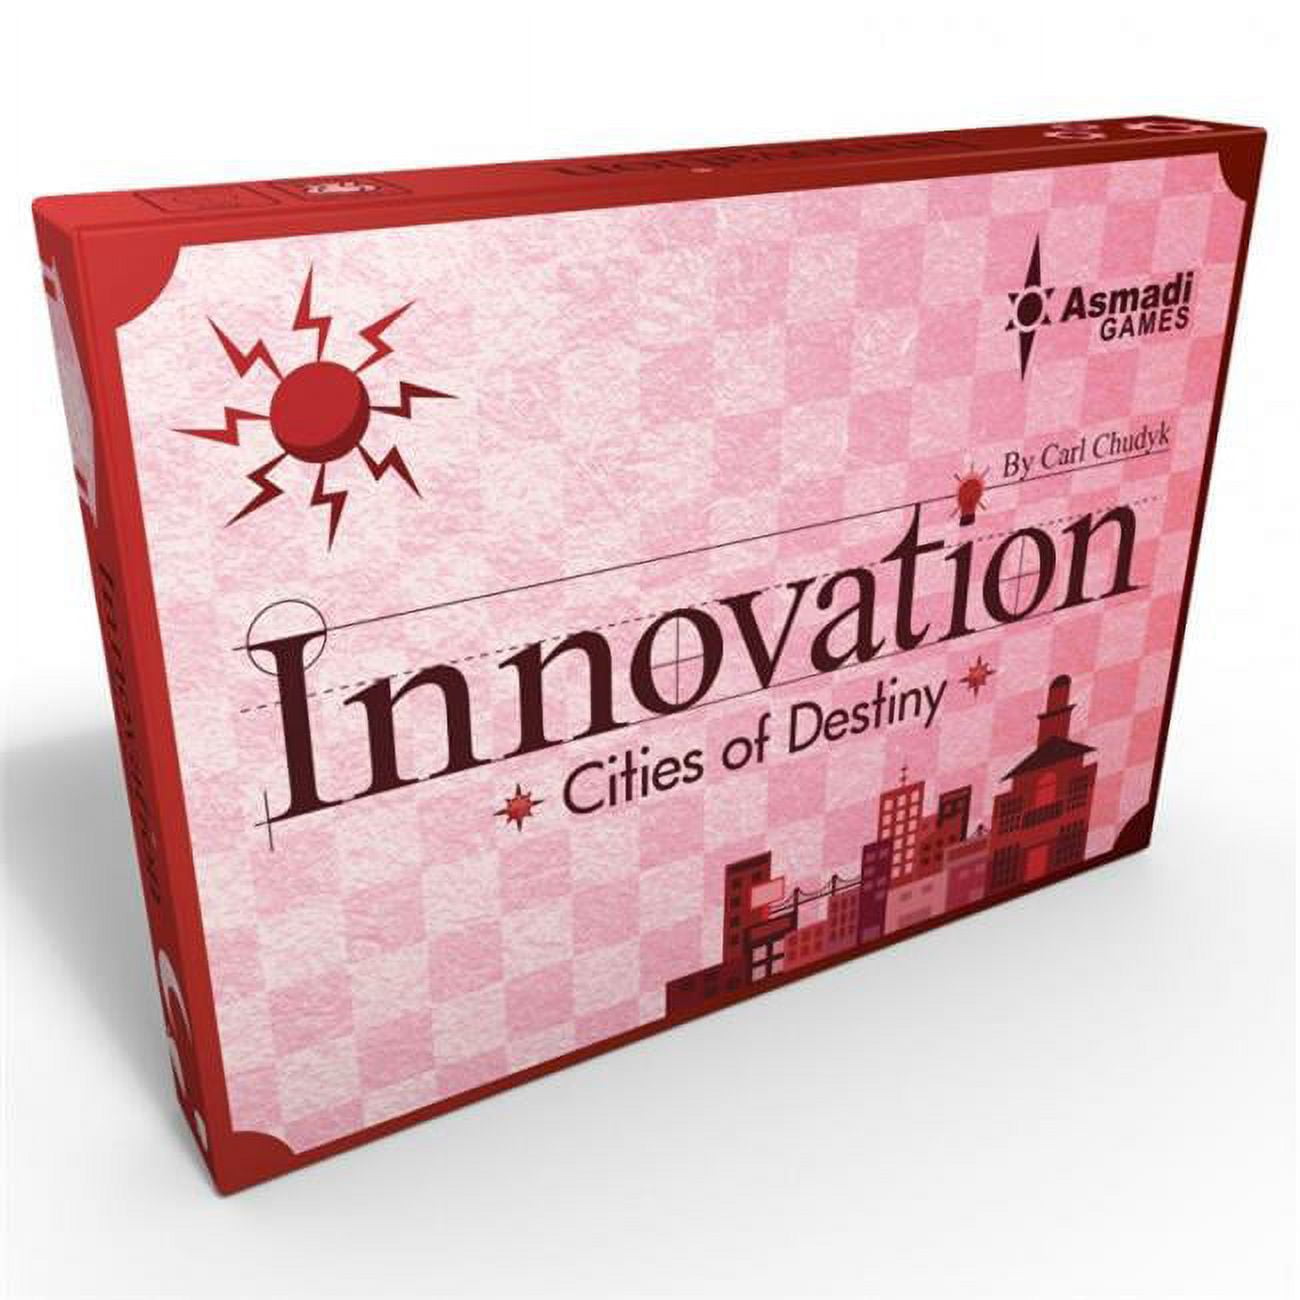 Asn0153 Innovation Cities Of Destiny 3e Card Games